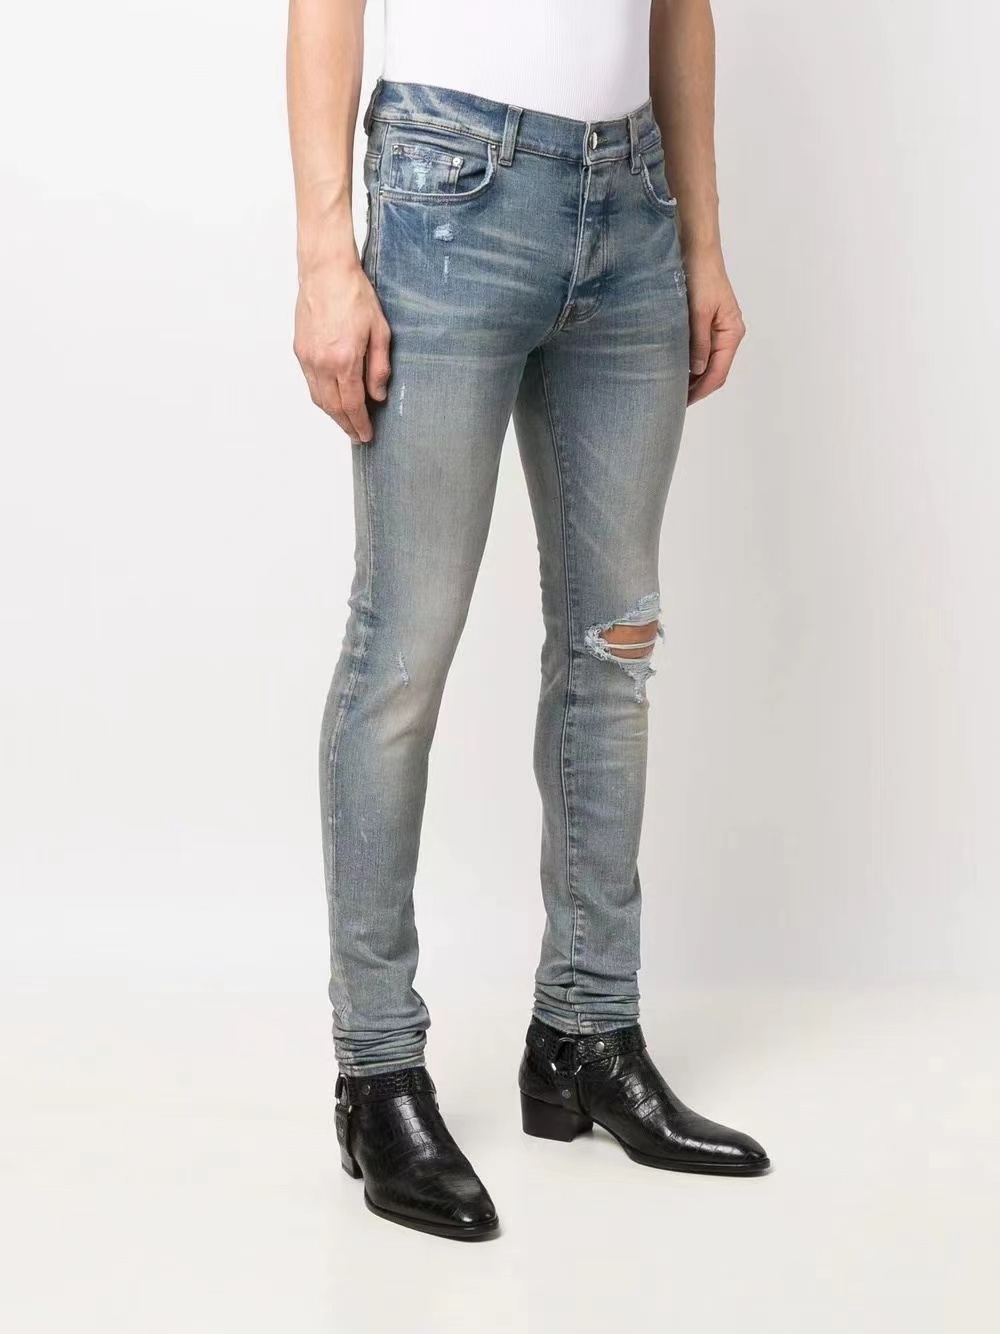 Мужские прохладные разрывы эластичные джинсы расстроенные разорванные байкерские байкеры Slim Fit, промытая мотоциклетная джинсовая джинсовая джинсовая ткань, мужчина мода моды Hip Hop Man.